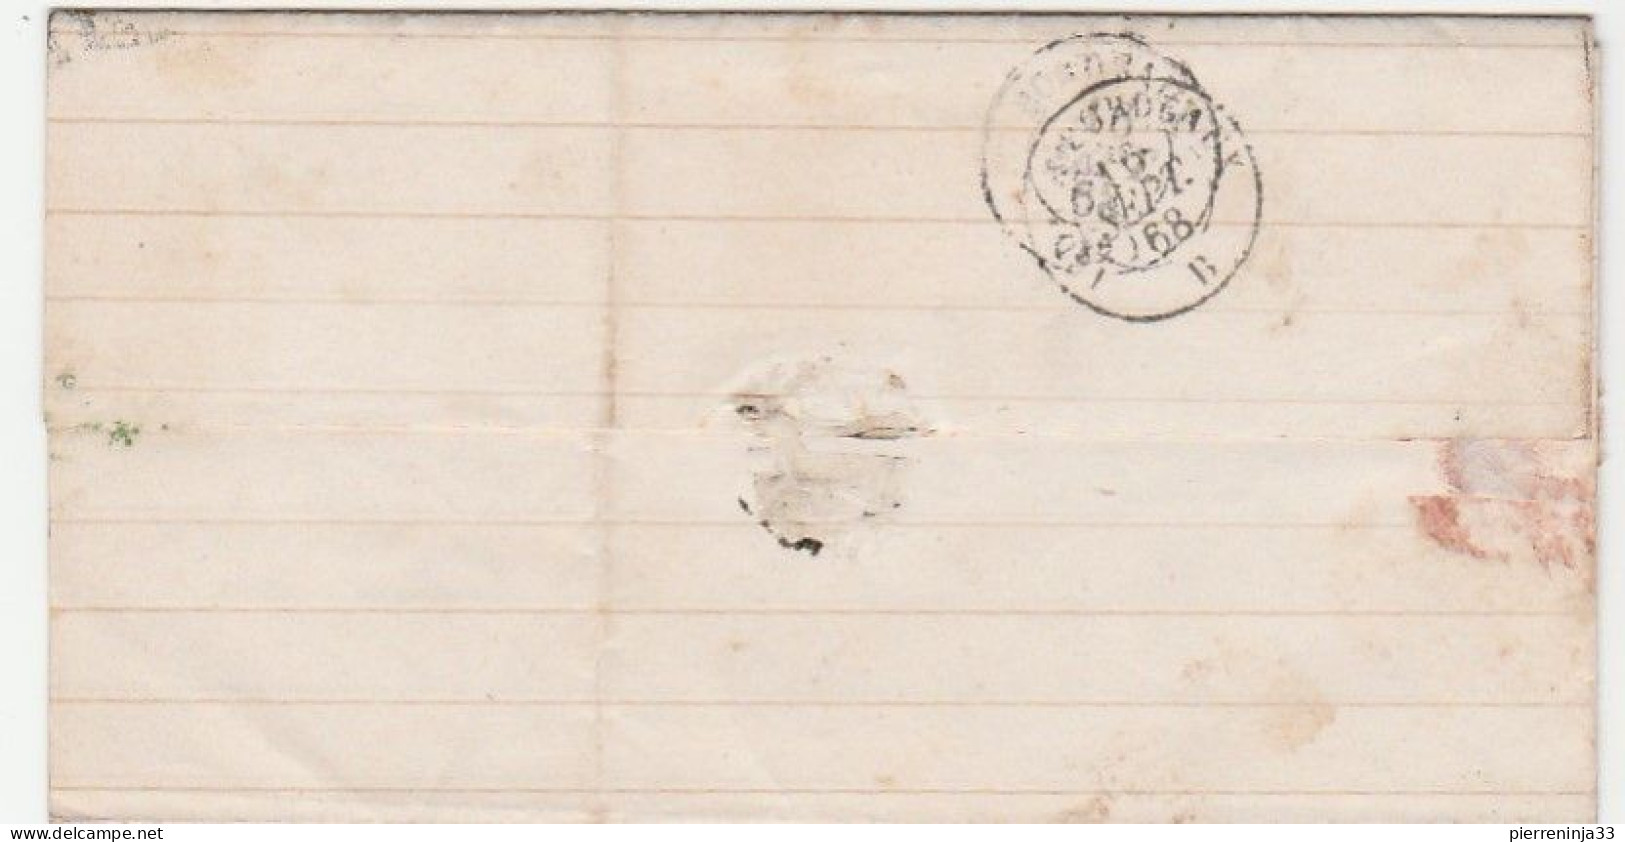 Lettre Avec Napoléon N°29, Cachet Perlé "Saugnac Et Muret" Landes, GC 4918, Ind18 (340e), Cachet "OR" - 1863-1870 Napoléon III Con Laureles